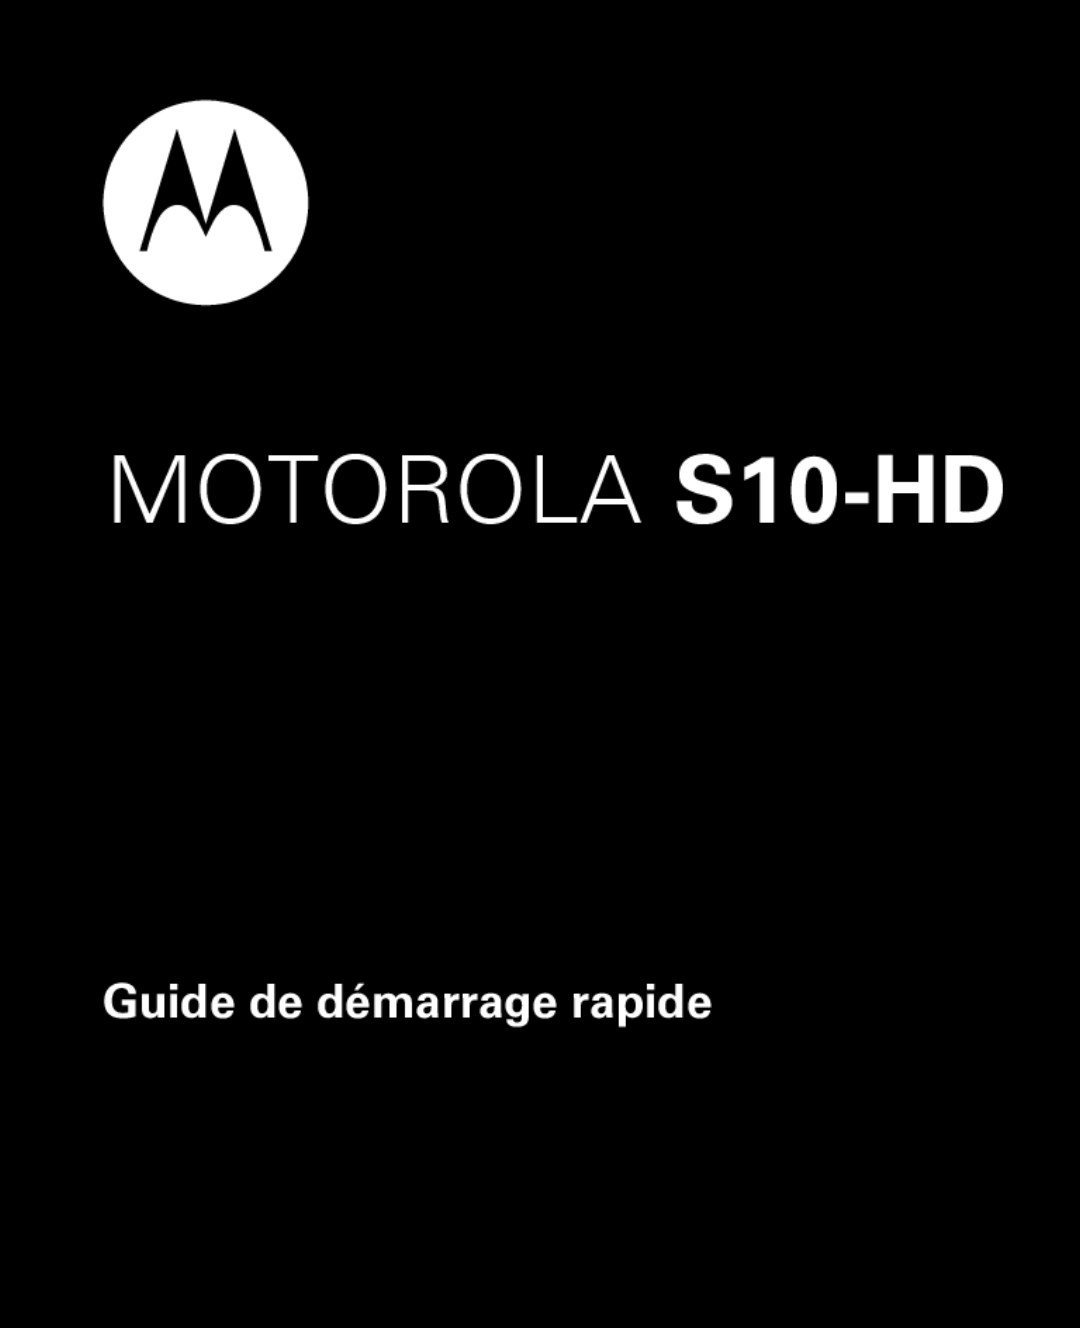 Motorola quick start Guide de démarrage rapide, MOTOROLA S10-HD 